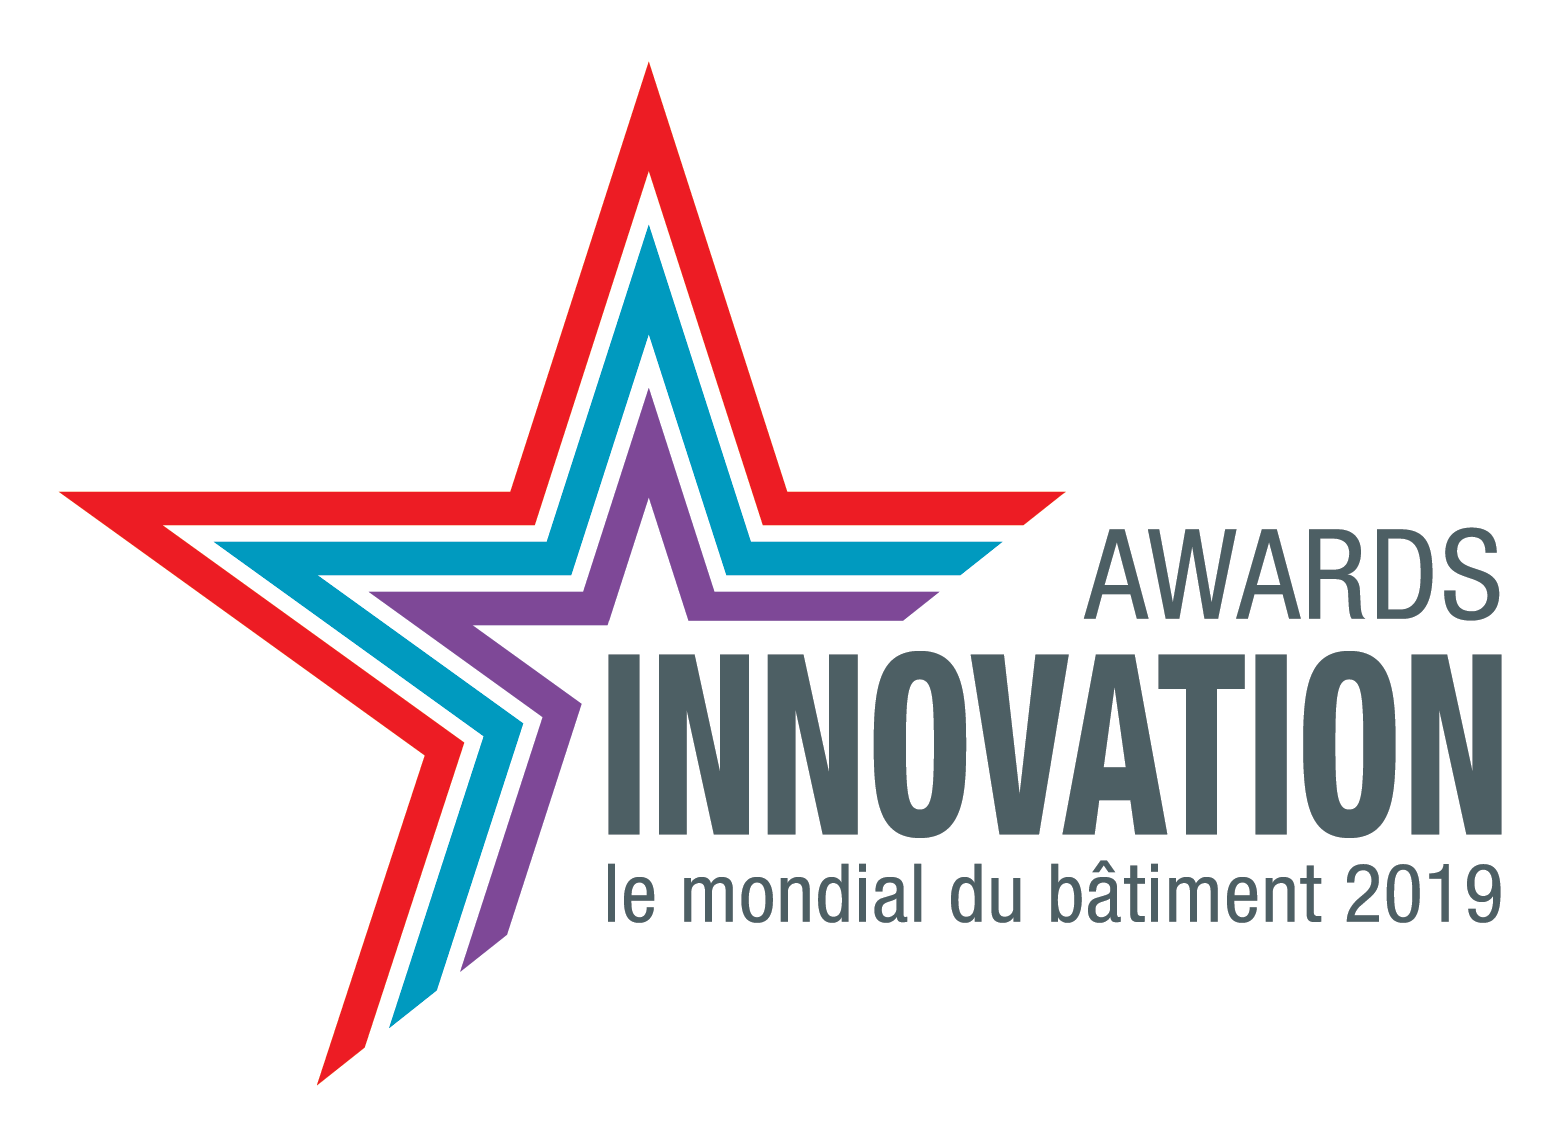 Awards Innovation 2019